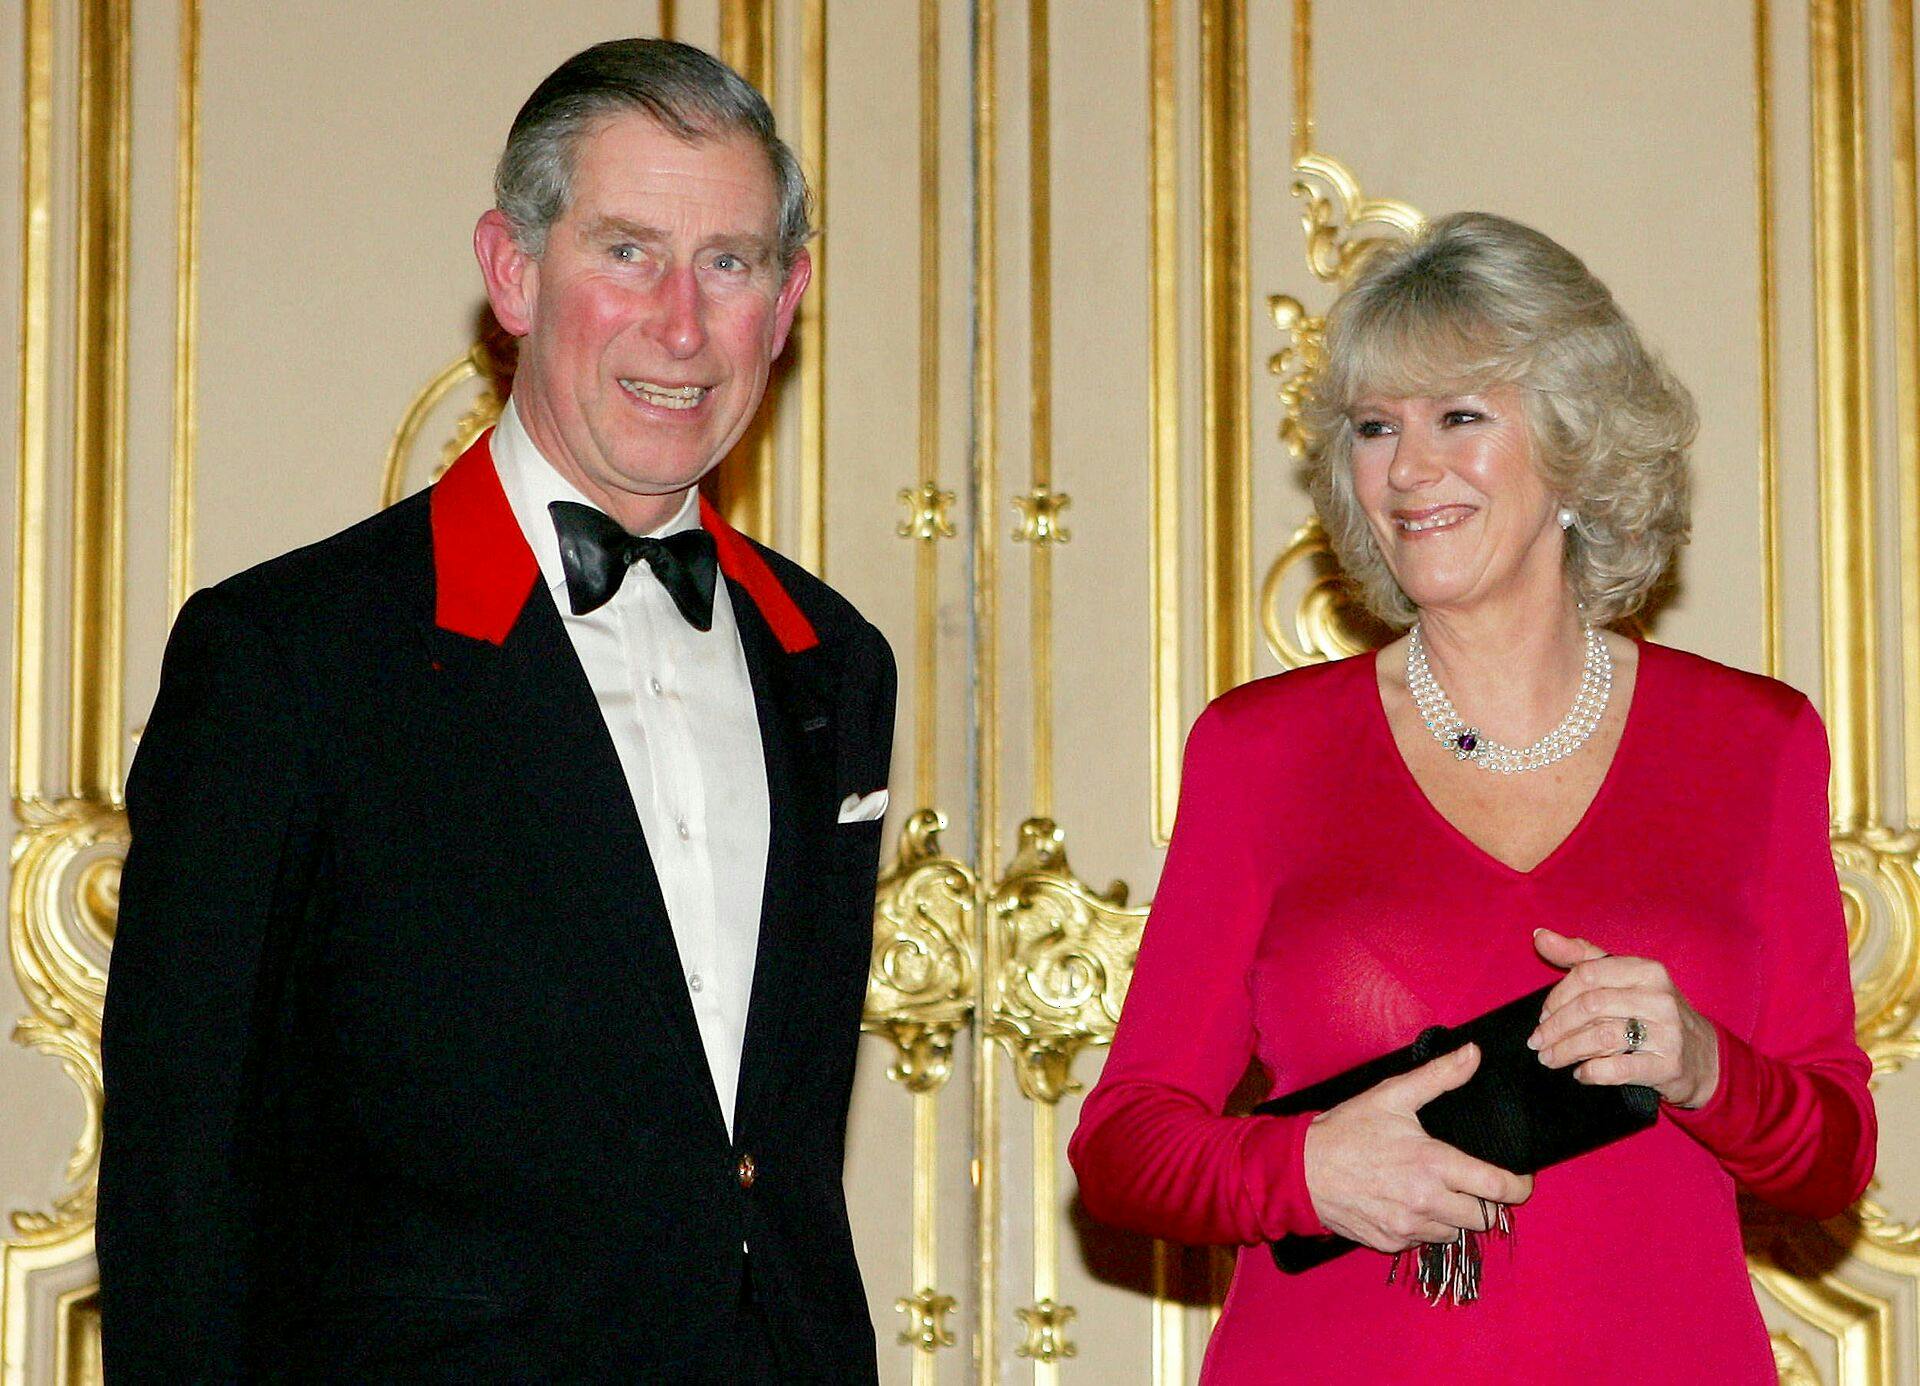 Prins Charles og Camilla blev gift i 2005 - godt ni år efter prinsesse Dianas fatale bilulykke i Paris.
